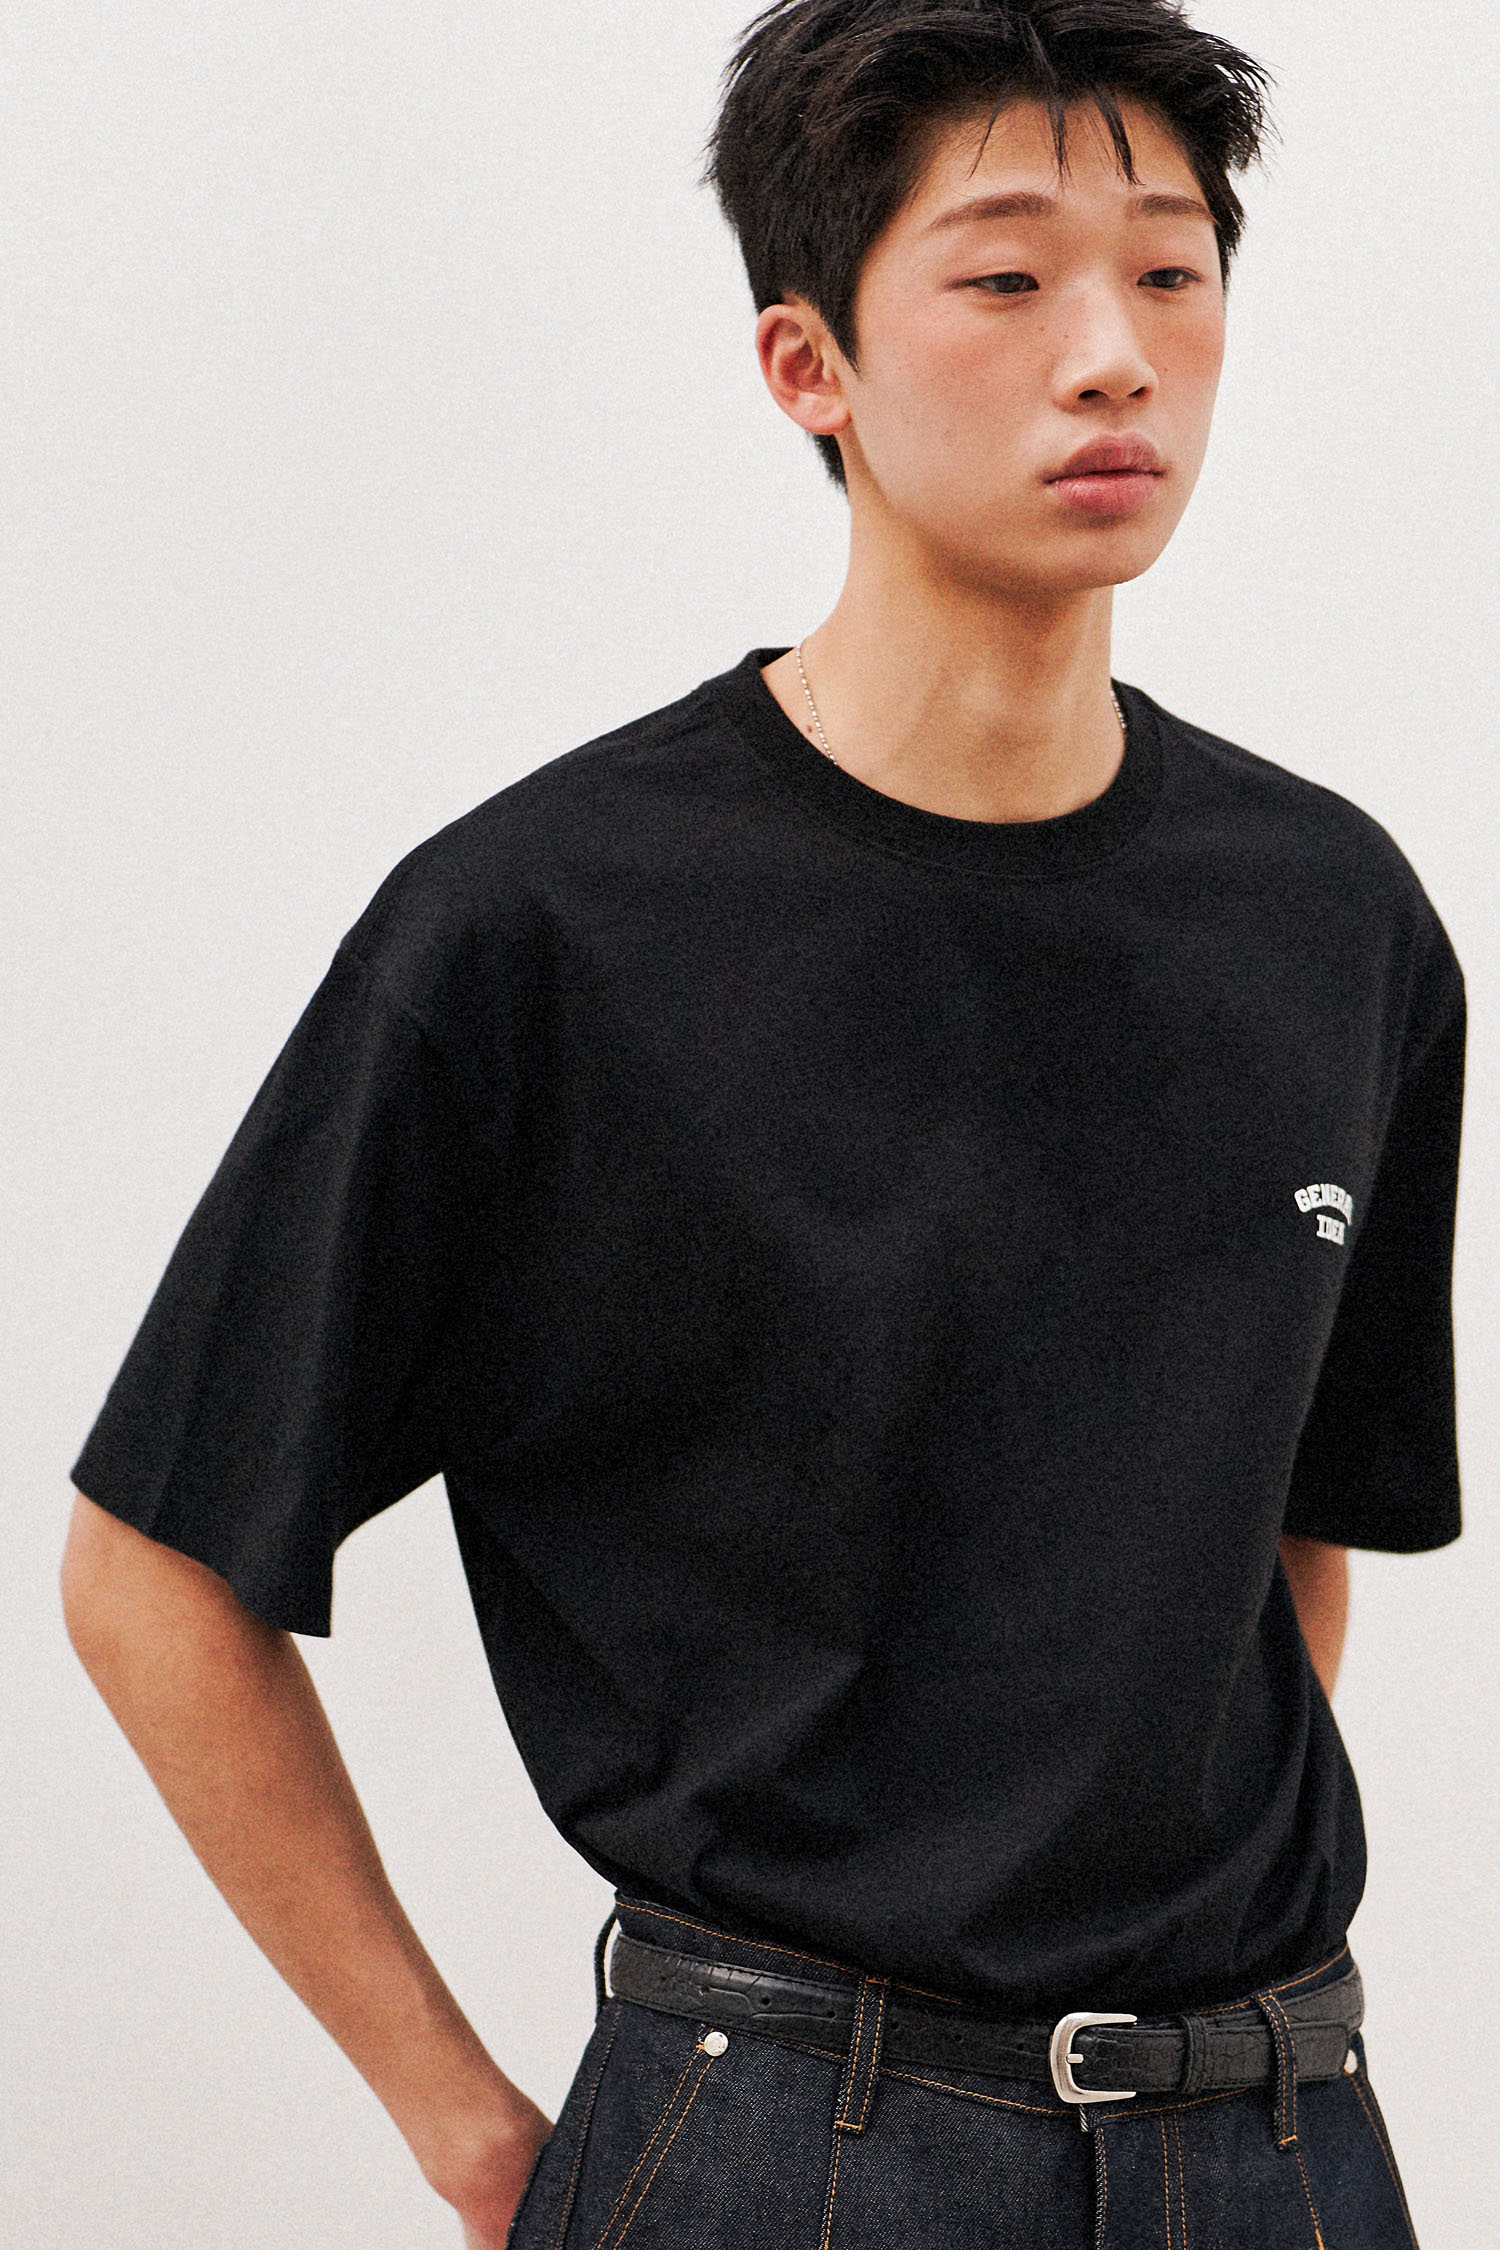 UNISEX クーリングロゴ 半袖Tシャツ [BLACK]